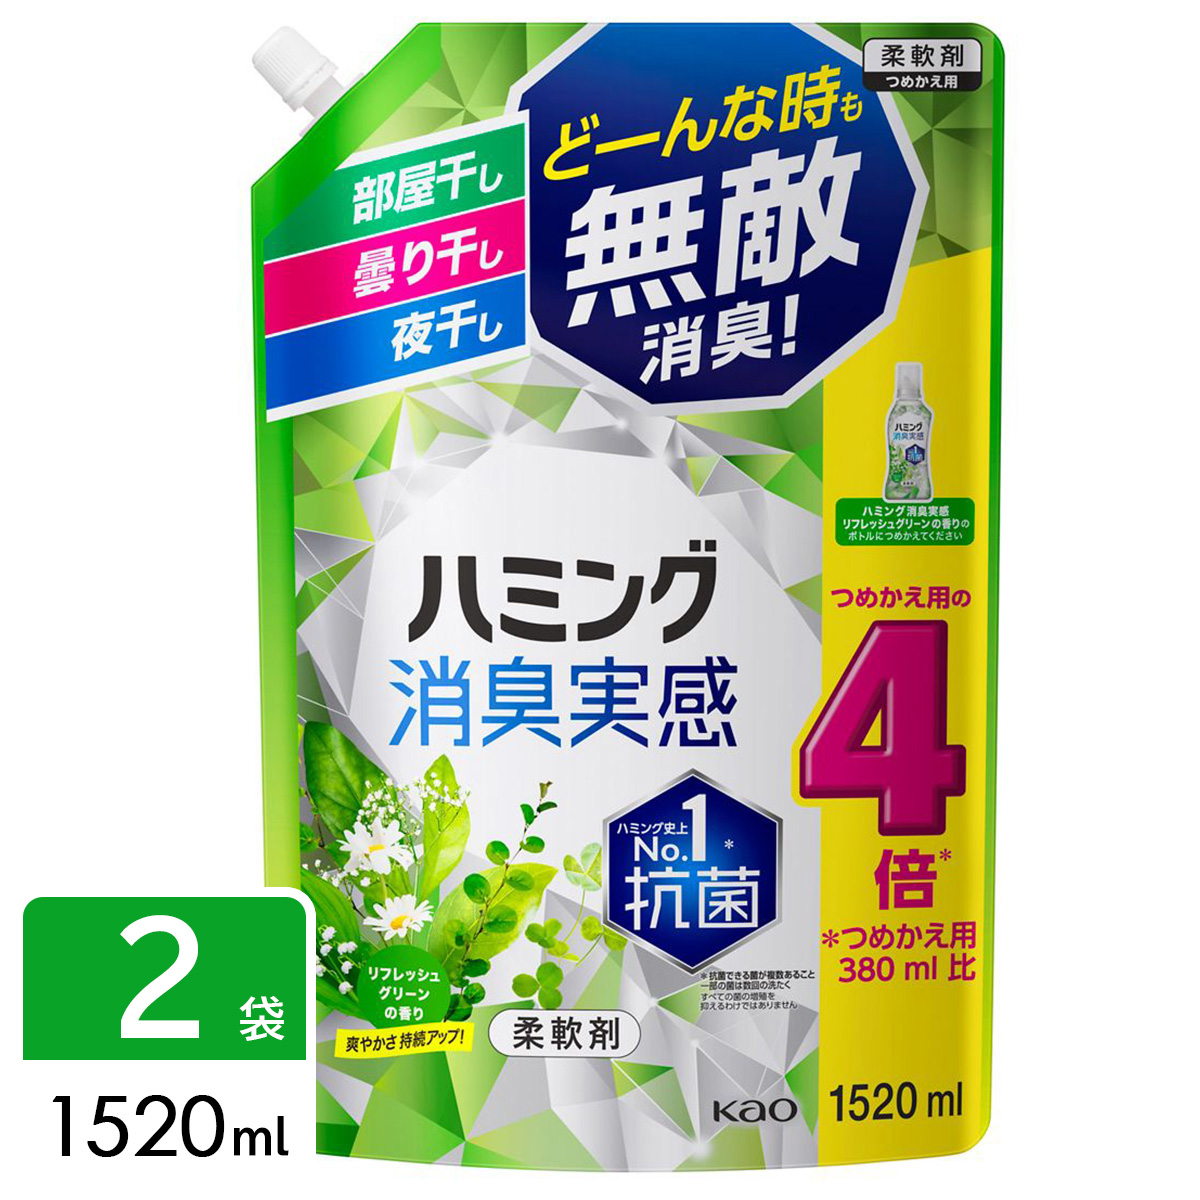 ハミング 消臭実感 柔軟剤 リフレッシュグリーンの香り 超特大 1520ml×2袋